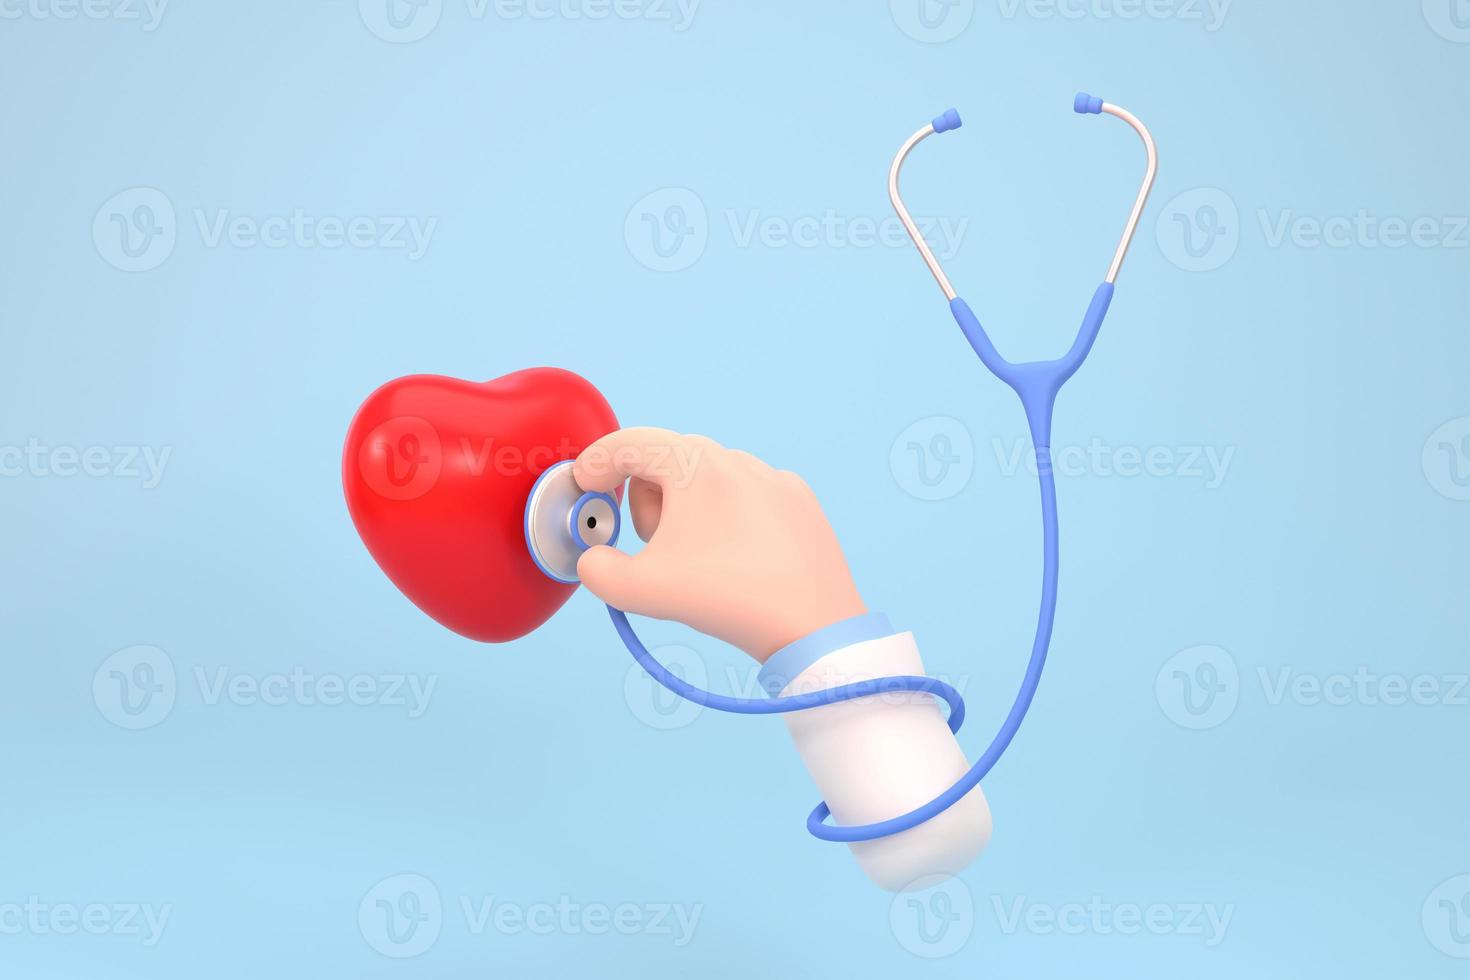 karikaturhandarzt, der ein stethoskop hält. medizinisches gesundheitskonzept. foto